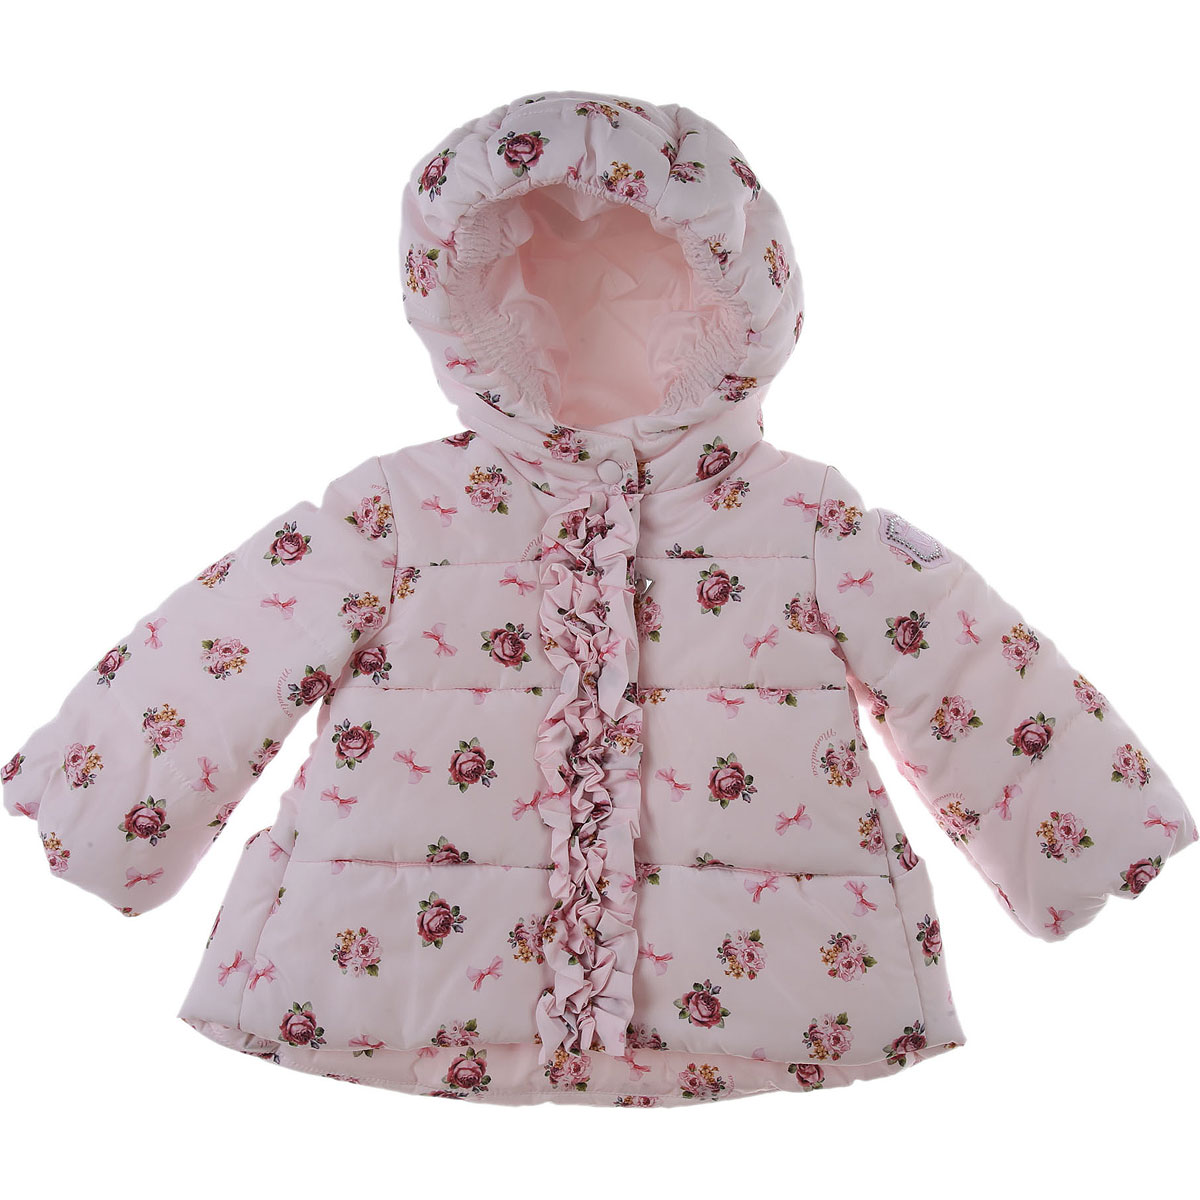 Monnalisa Baby Daunen Jacke für Mädchen Günstig im Sale, Hellpink, Polyester, 2017, 12M 18M 2Y